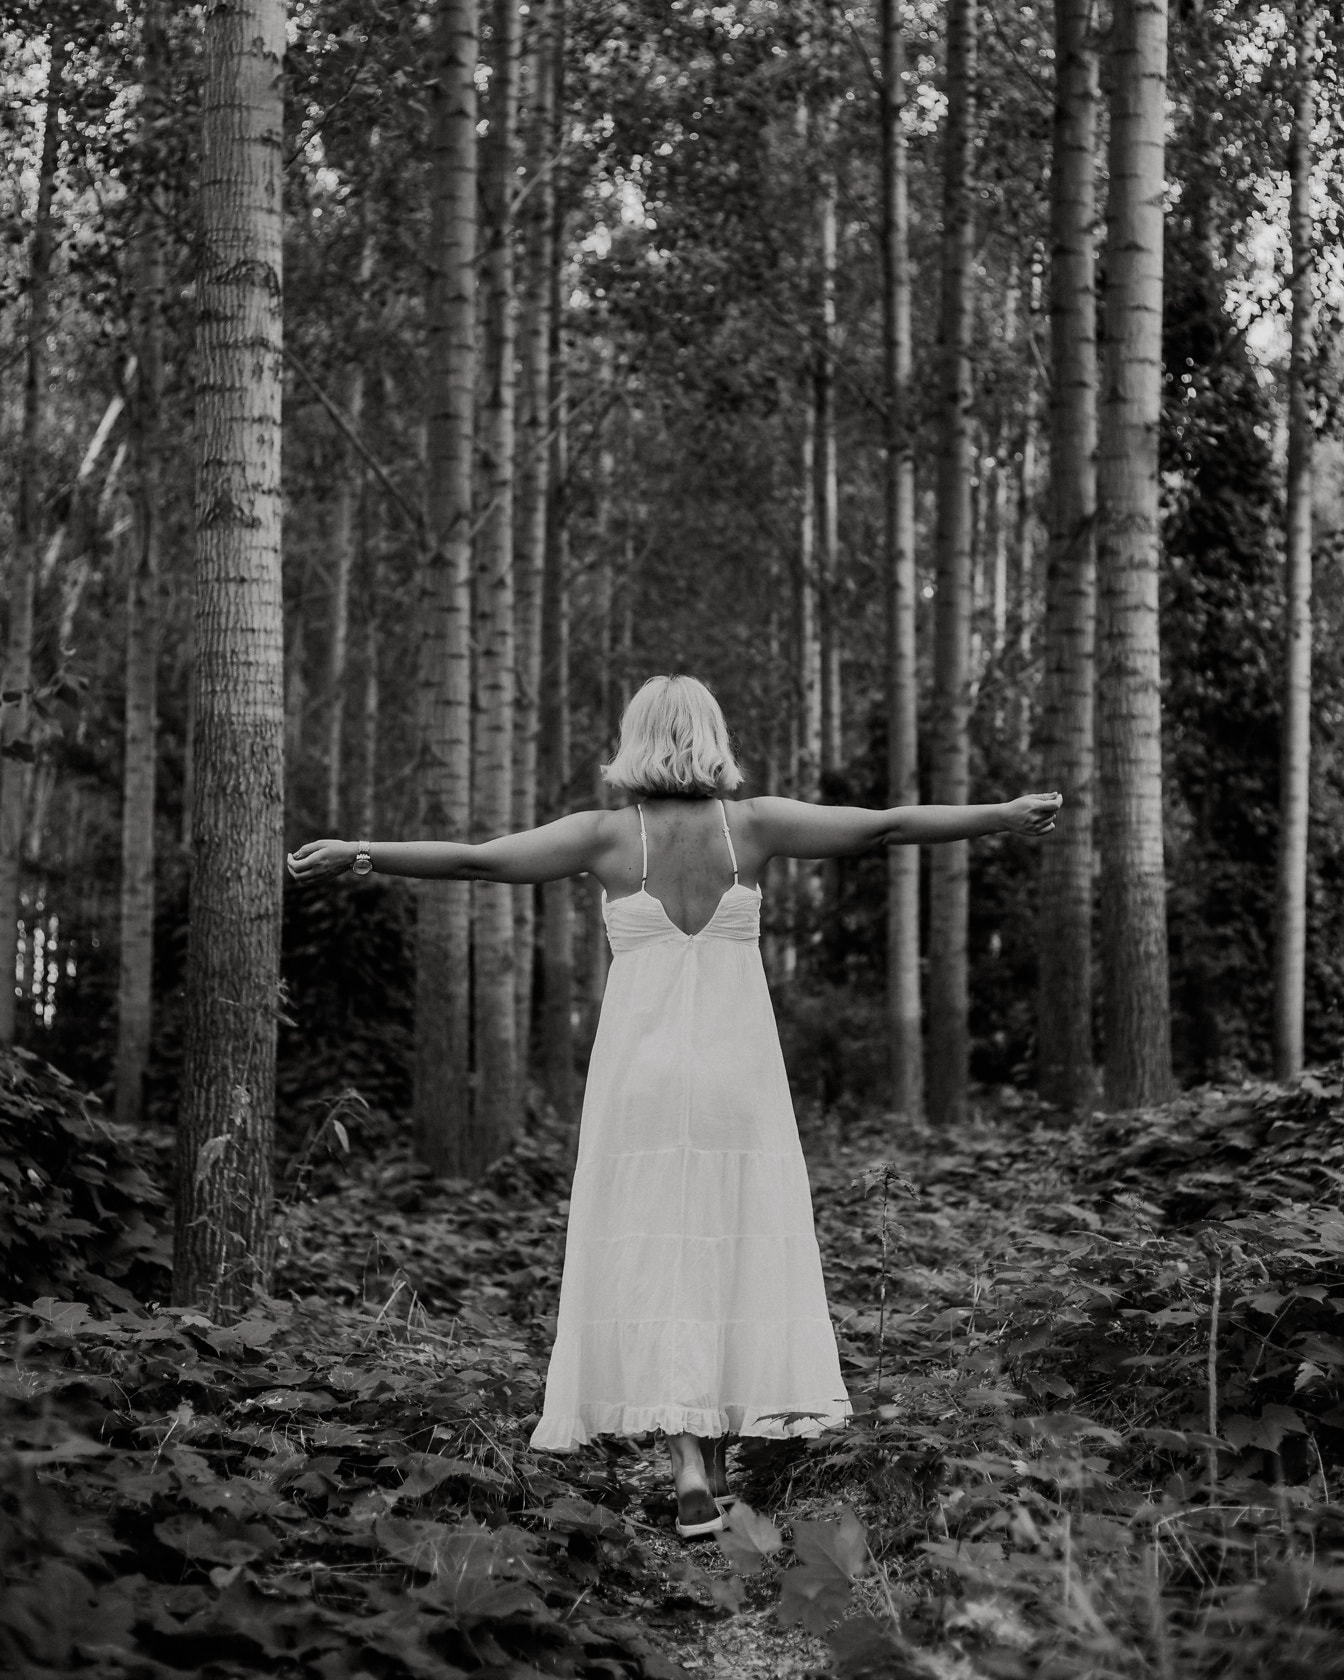 Người phụ nữ vui vẻ trong chiếc váy trắng trong nhiếp ảnh đơn sắc rừng